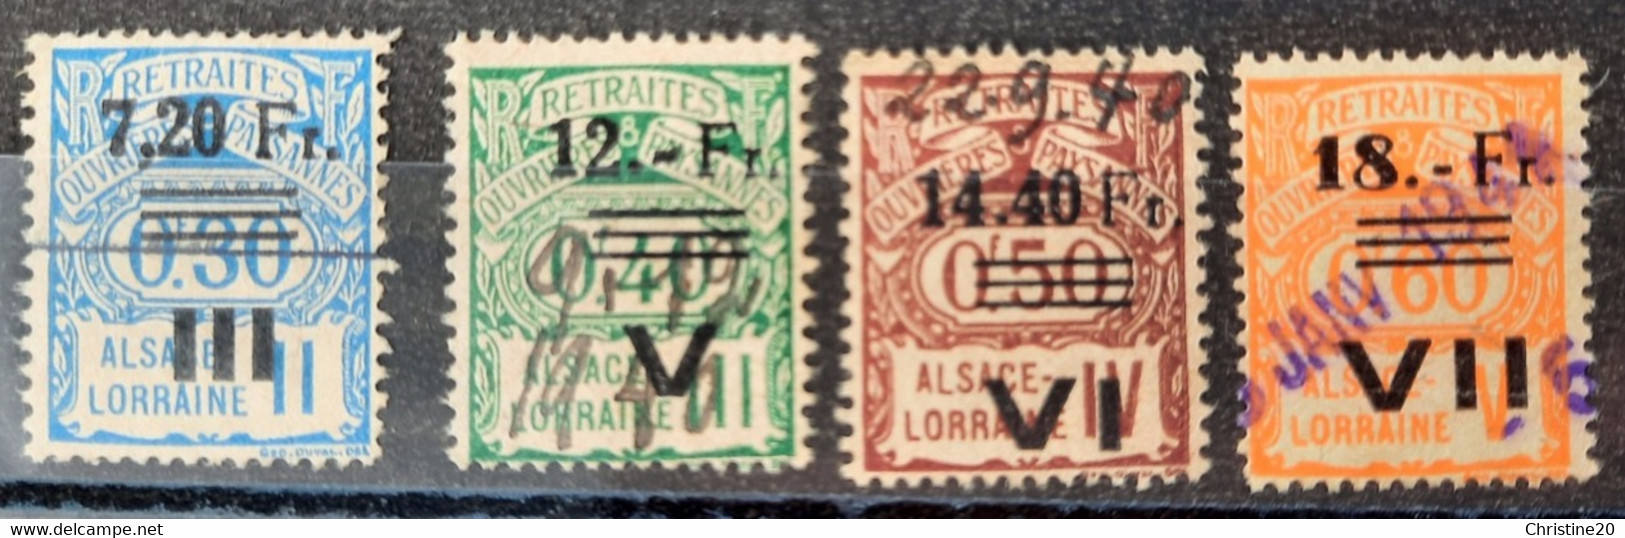 France 1940 Alsace-Lorraine N°163,165/67 Socio-postaux Occupation Allemande Régime De Transition Ob TB Cote 115€ - Usati